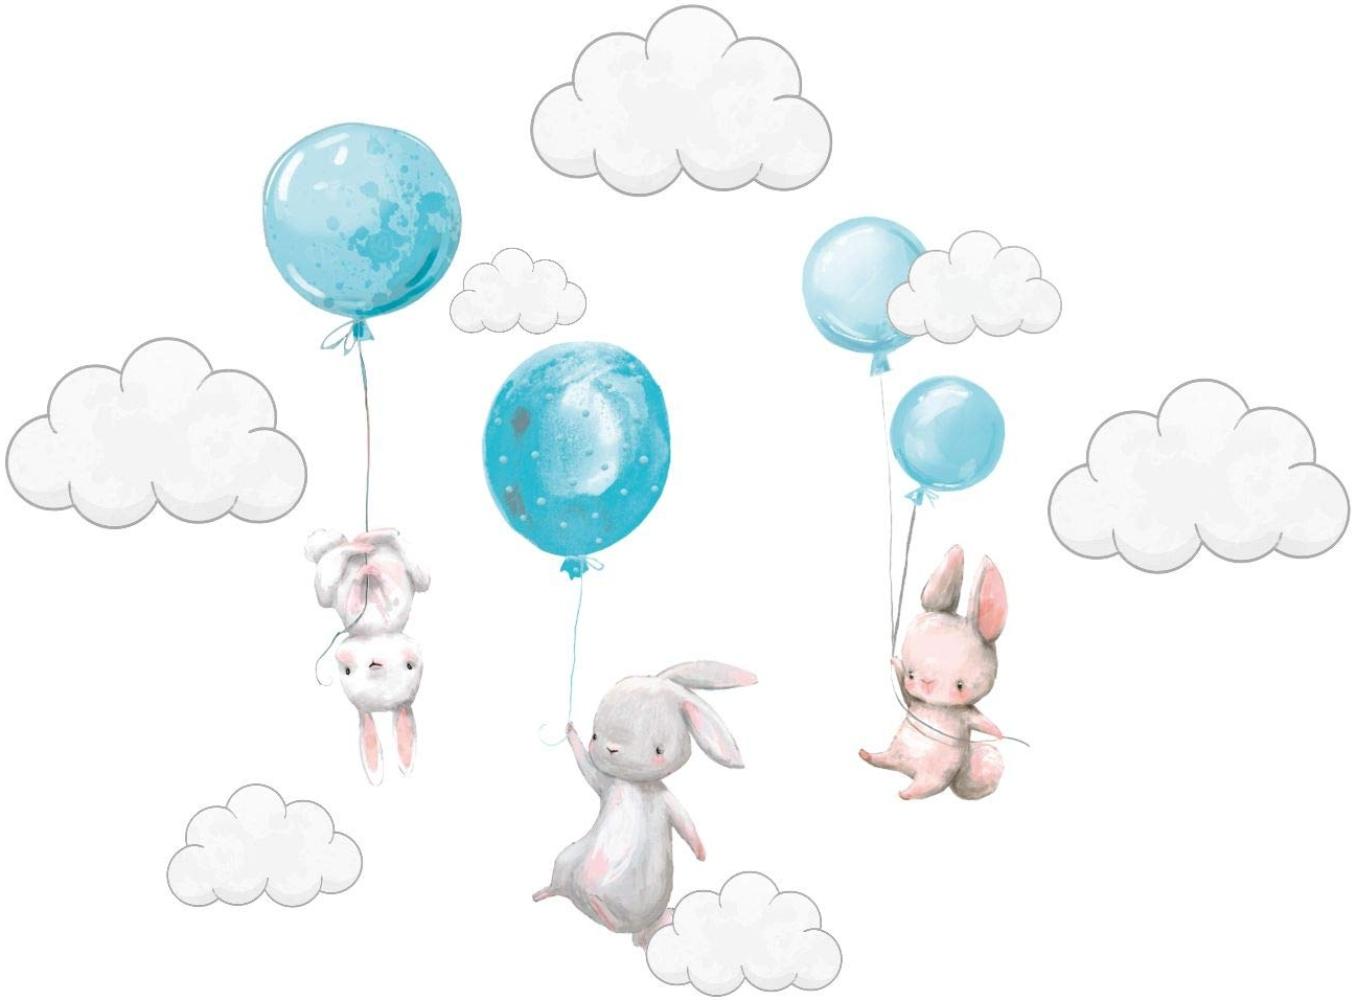 Szeridan Kaninchen Hase Ballons Wolken Wandtattoo Babyzimmer Wandsticker Wandaufkleber Aufkleber Deko für Kinderzimmer Baby Kinder Kinderzimmer Mädchen Junge Dekoration 170 x 200 cm (XXXXL, Blau) Bild 1